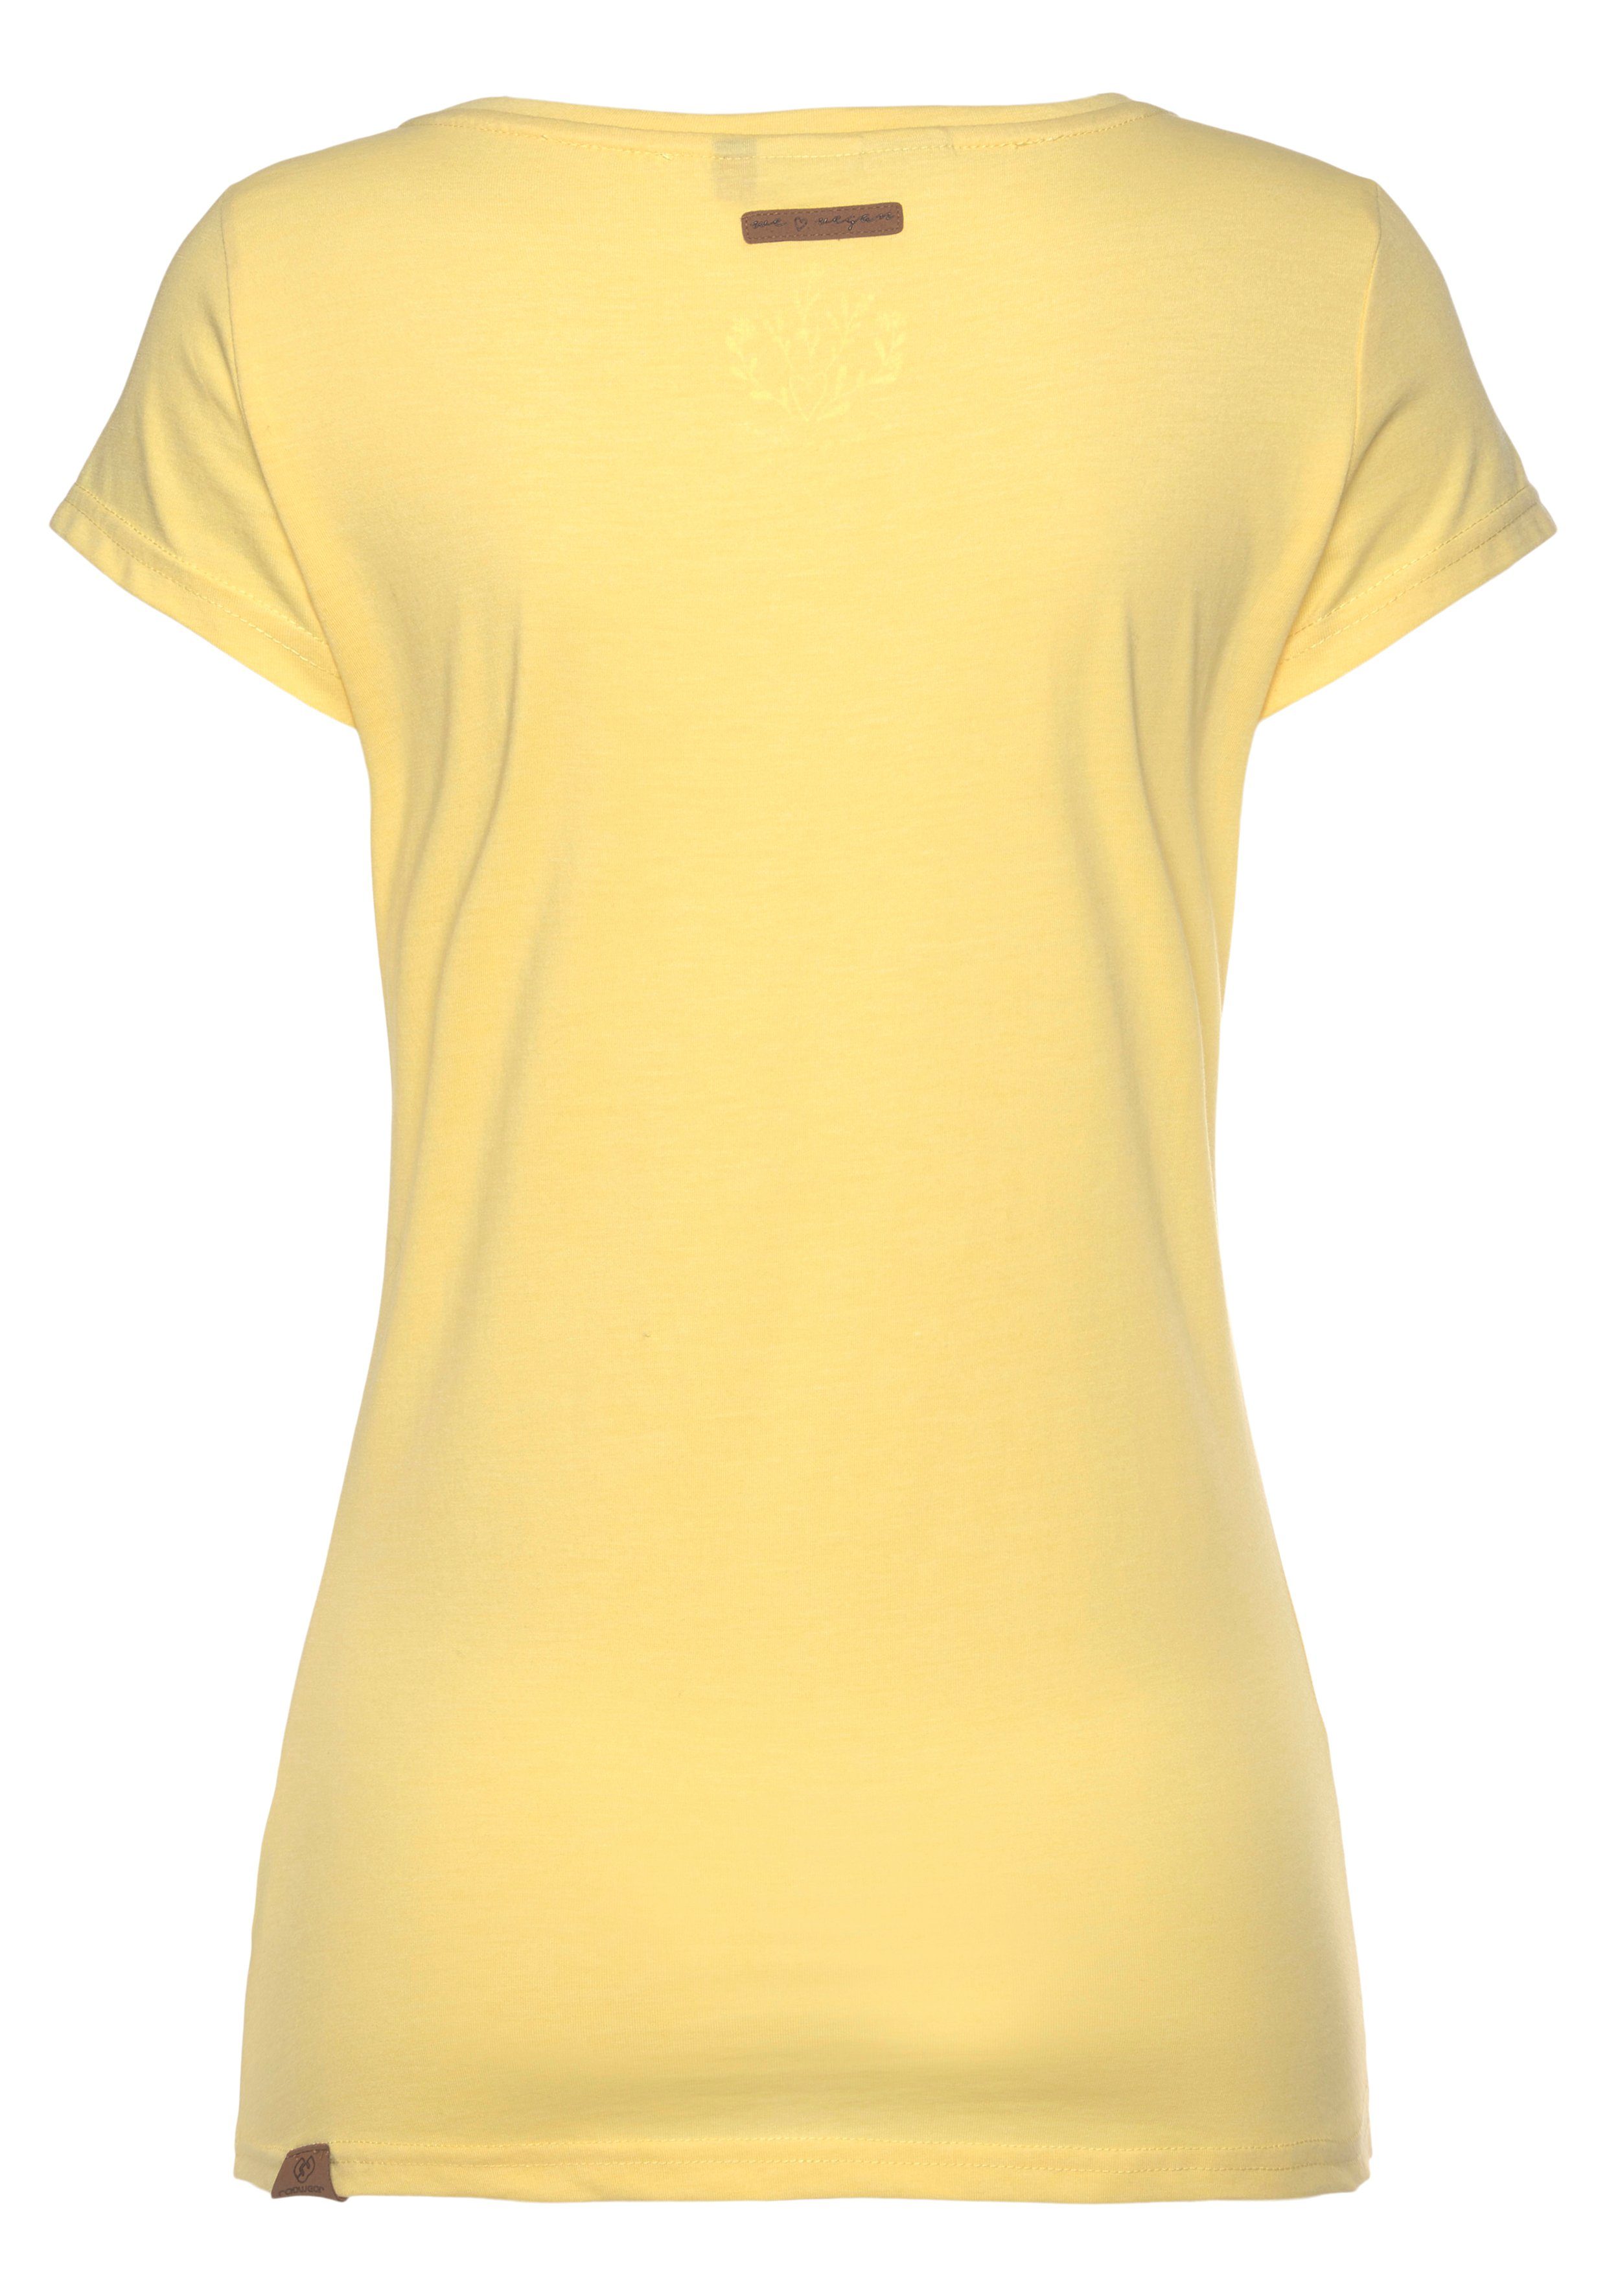 Logoschriftzug O Ragwear yellow natürlicher T-Shirt 6028 MINT Zierknopf-Applikation Holzoptik in mit und